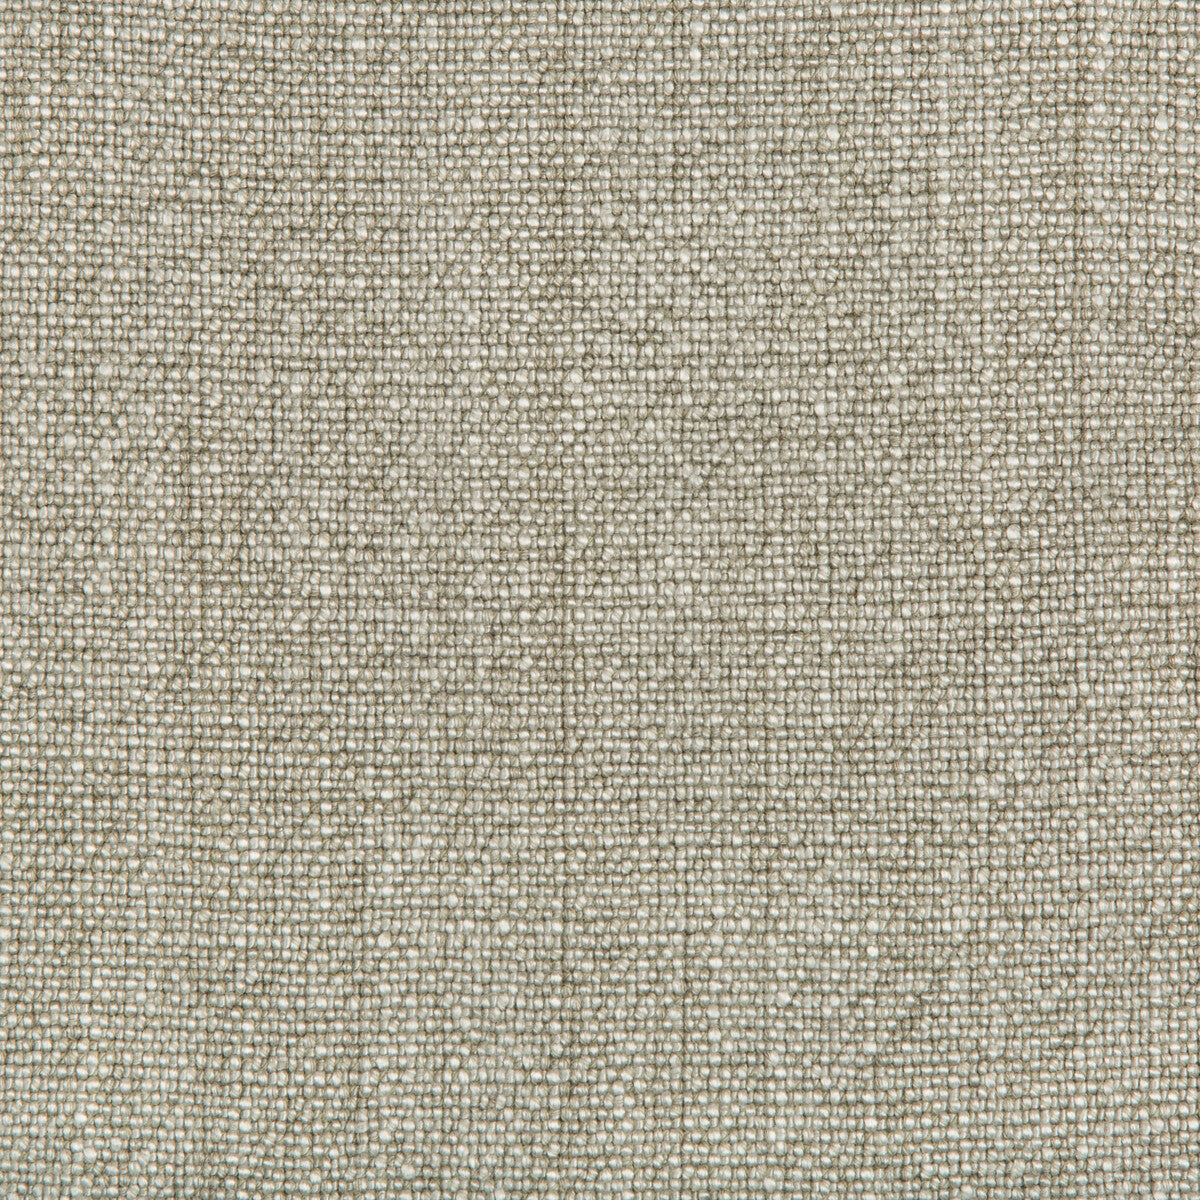 Kravet Basics fabric in 35189-1013 color - pattern 35189.1013.0 - by Kravet Basics